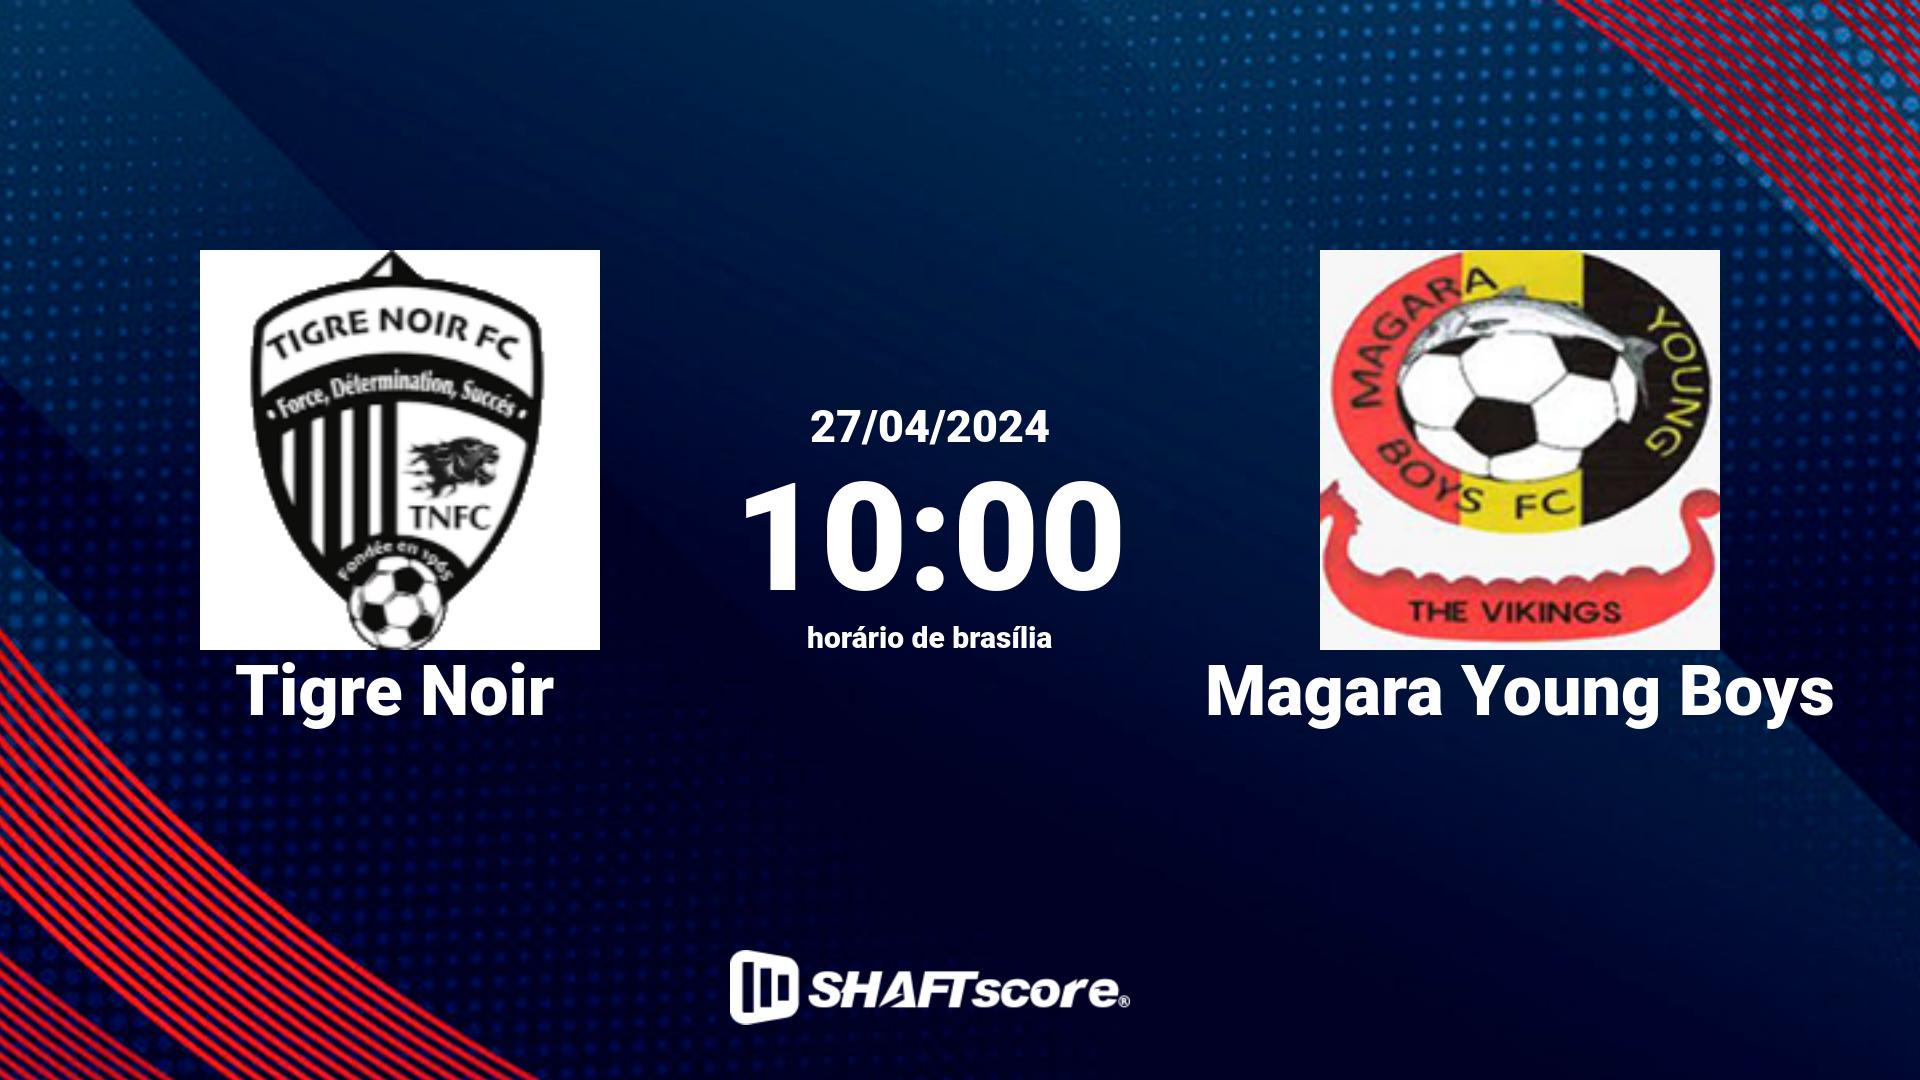 Estatísticas do jogo Tigre Noir vs Magara Young Boys 27.04 10:00